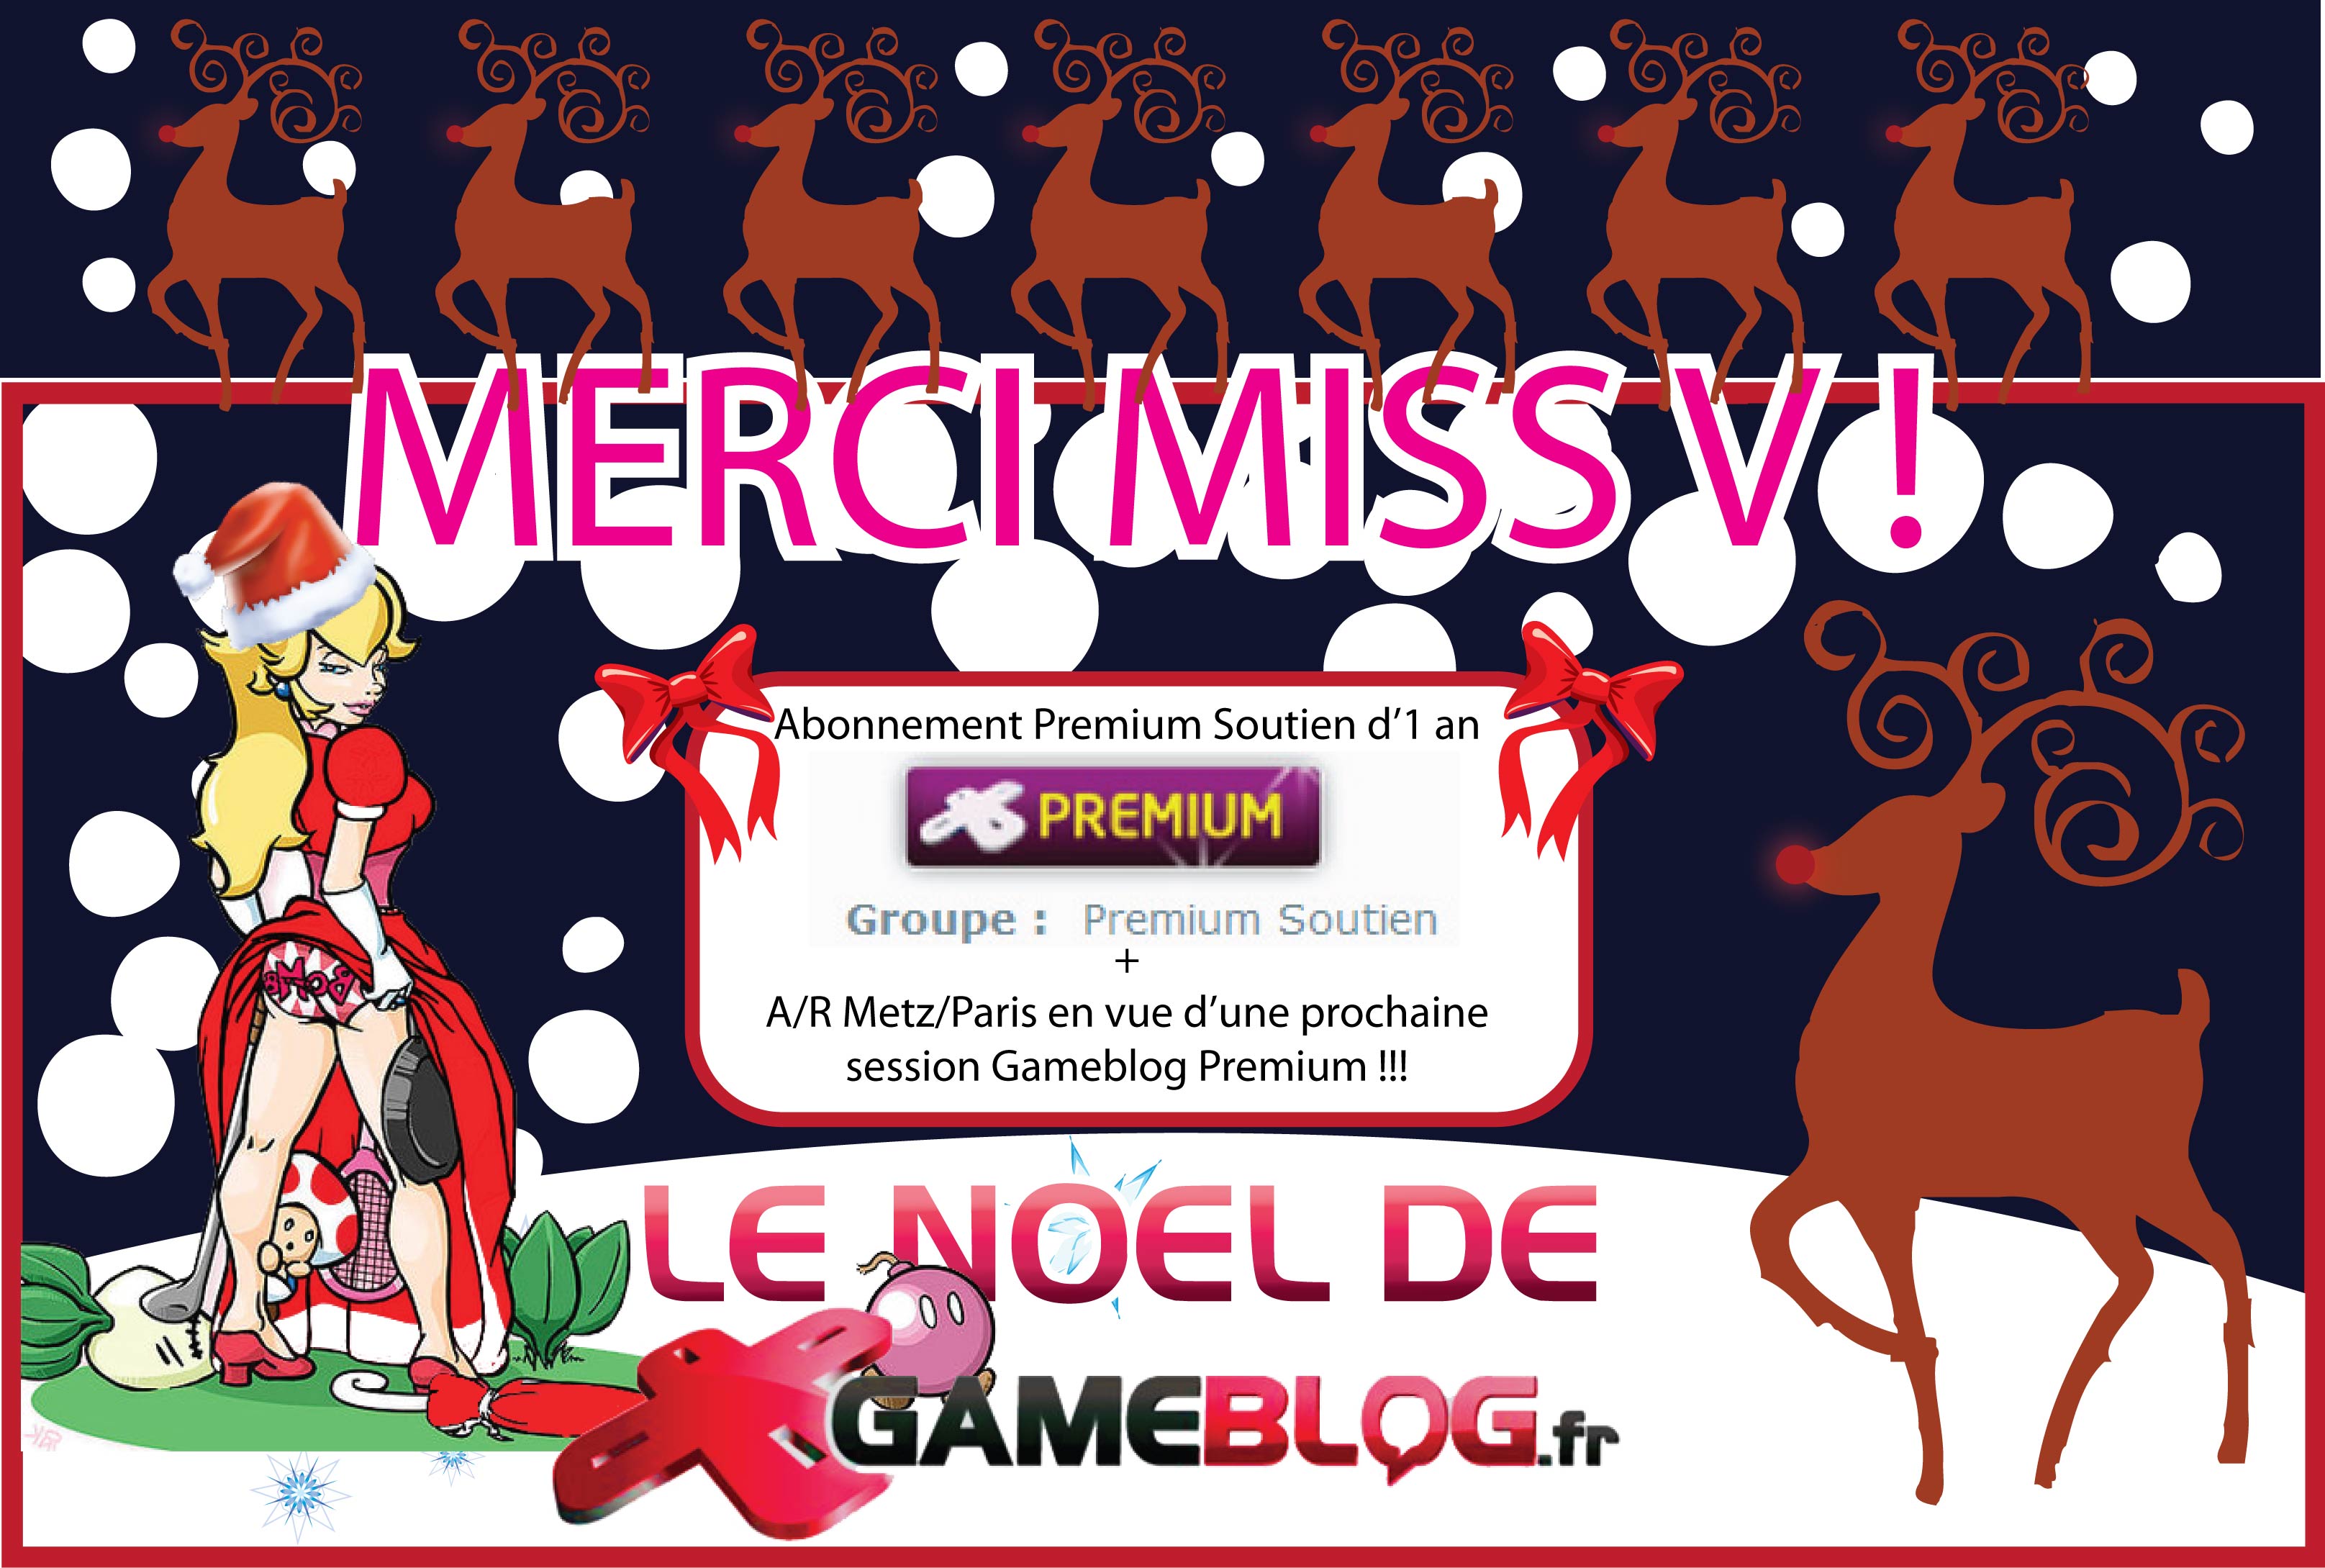 Les Gameblogueurs souhaitent un très Joyeux Noël à Miss V